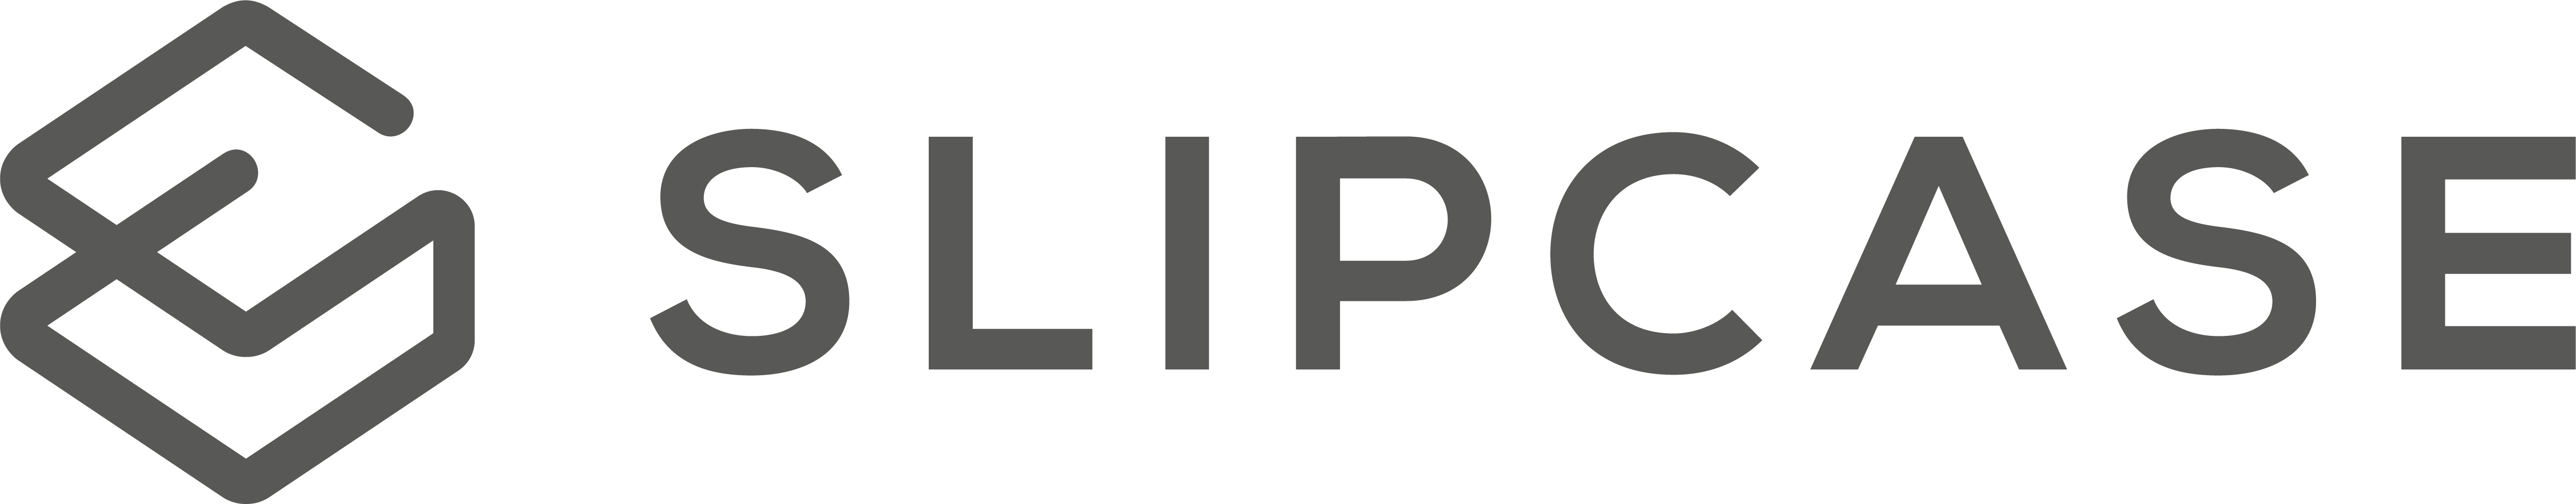 Slipcase logo